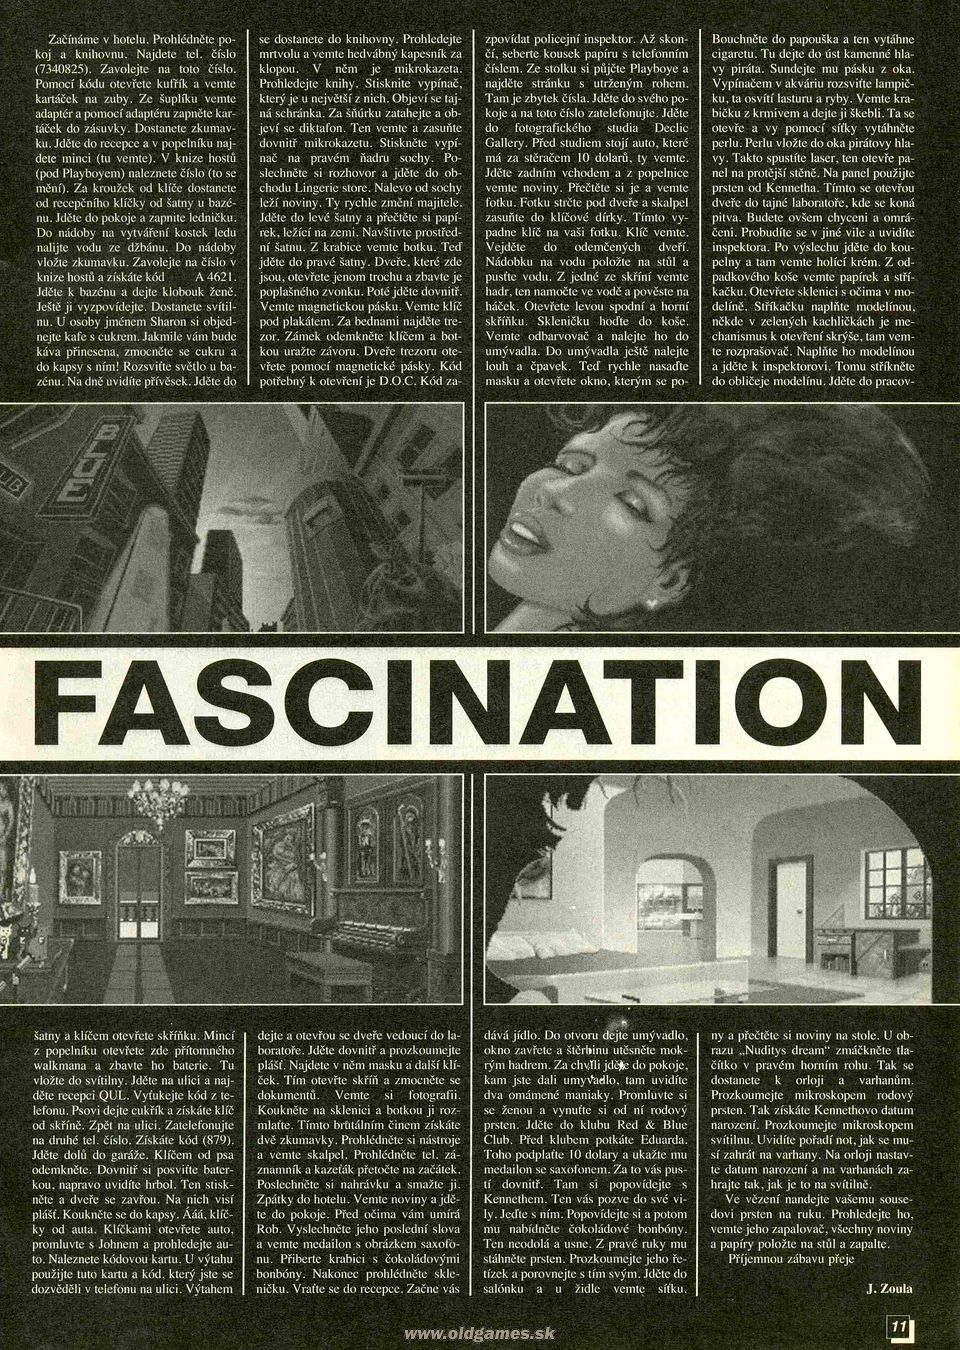 Fascination, Návod